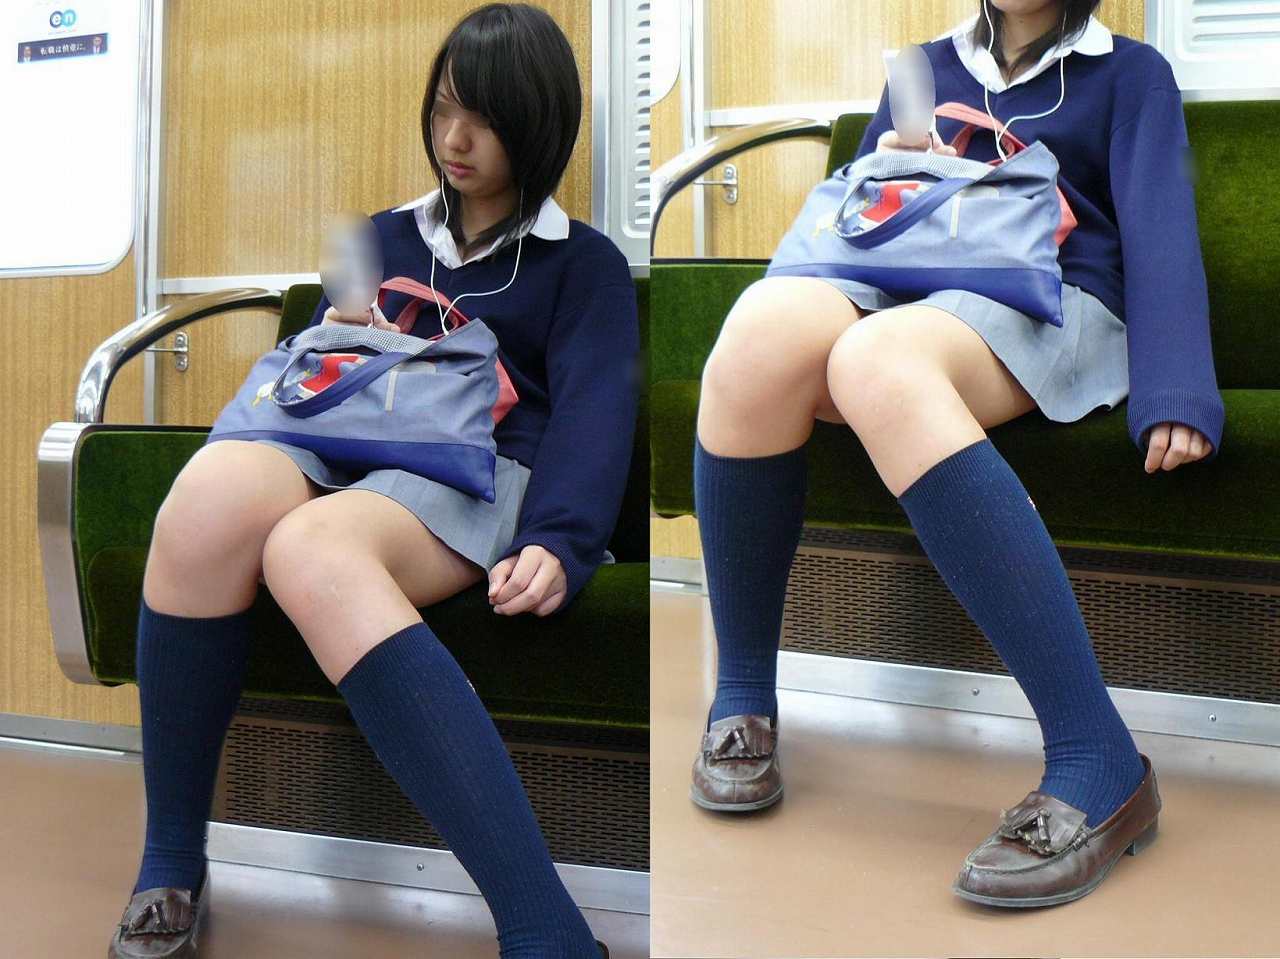 電車内でこんなスケベな女子高生がいたらたまんない (3)